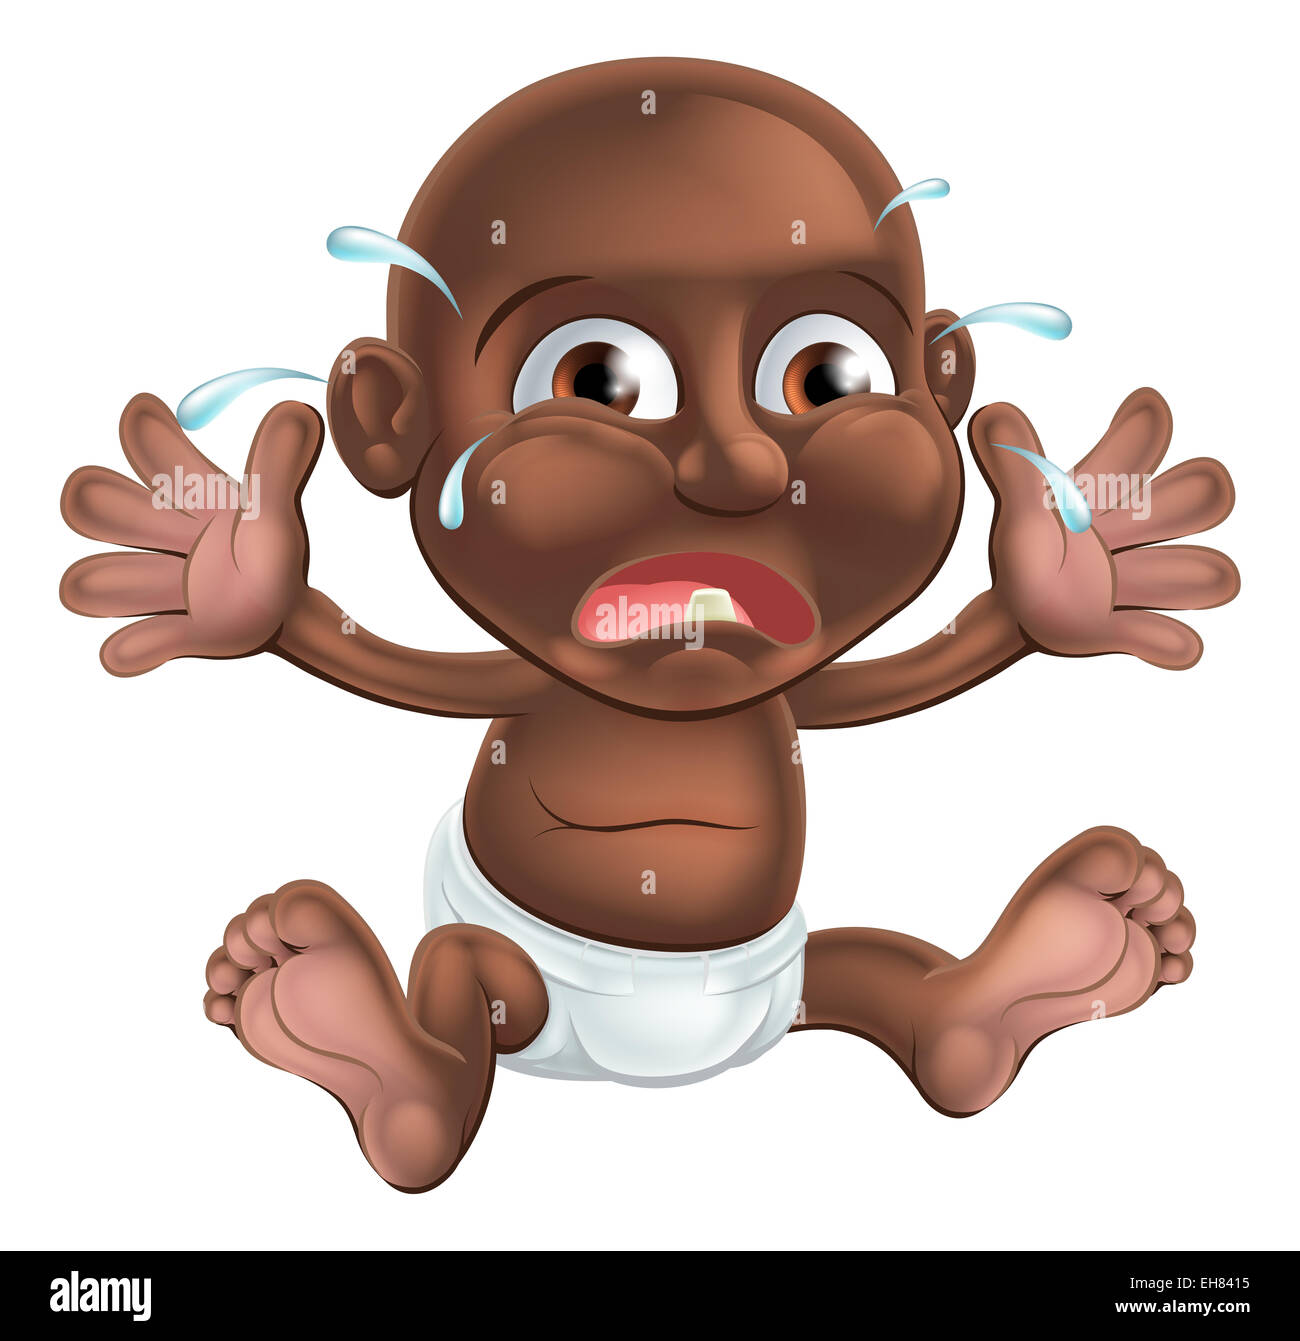 Une malheureuse pleurer bébé cartoon, dentition probablement car il a une dent montrant Banque D'Images